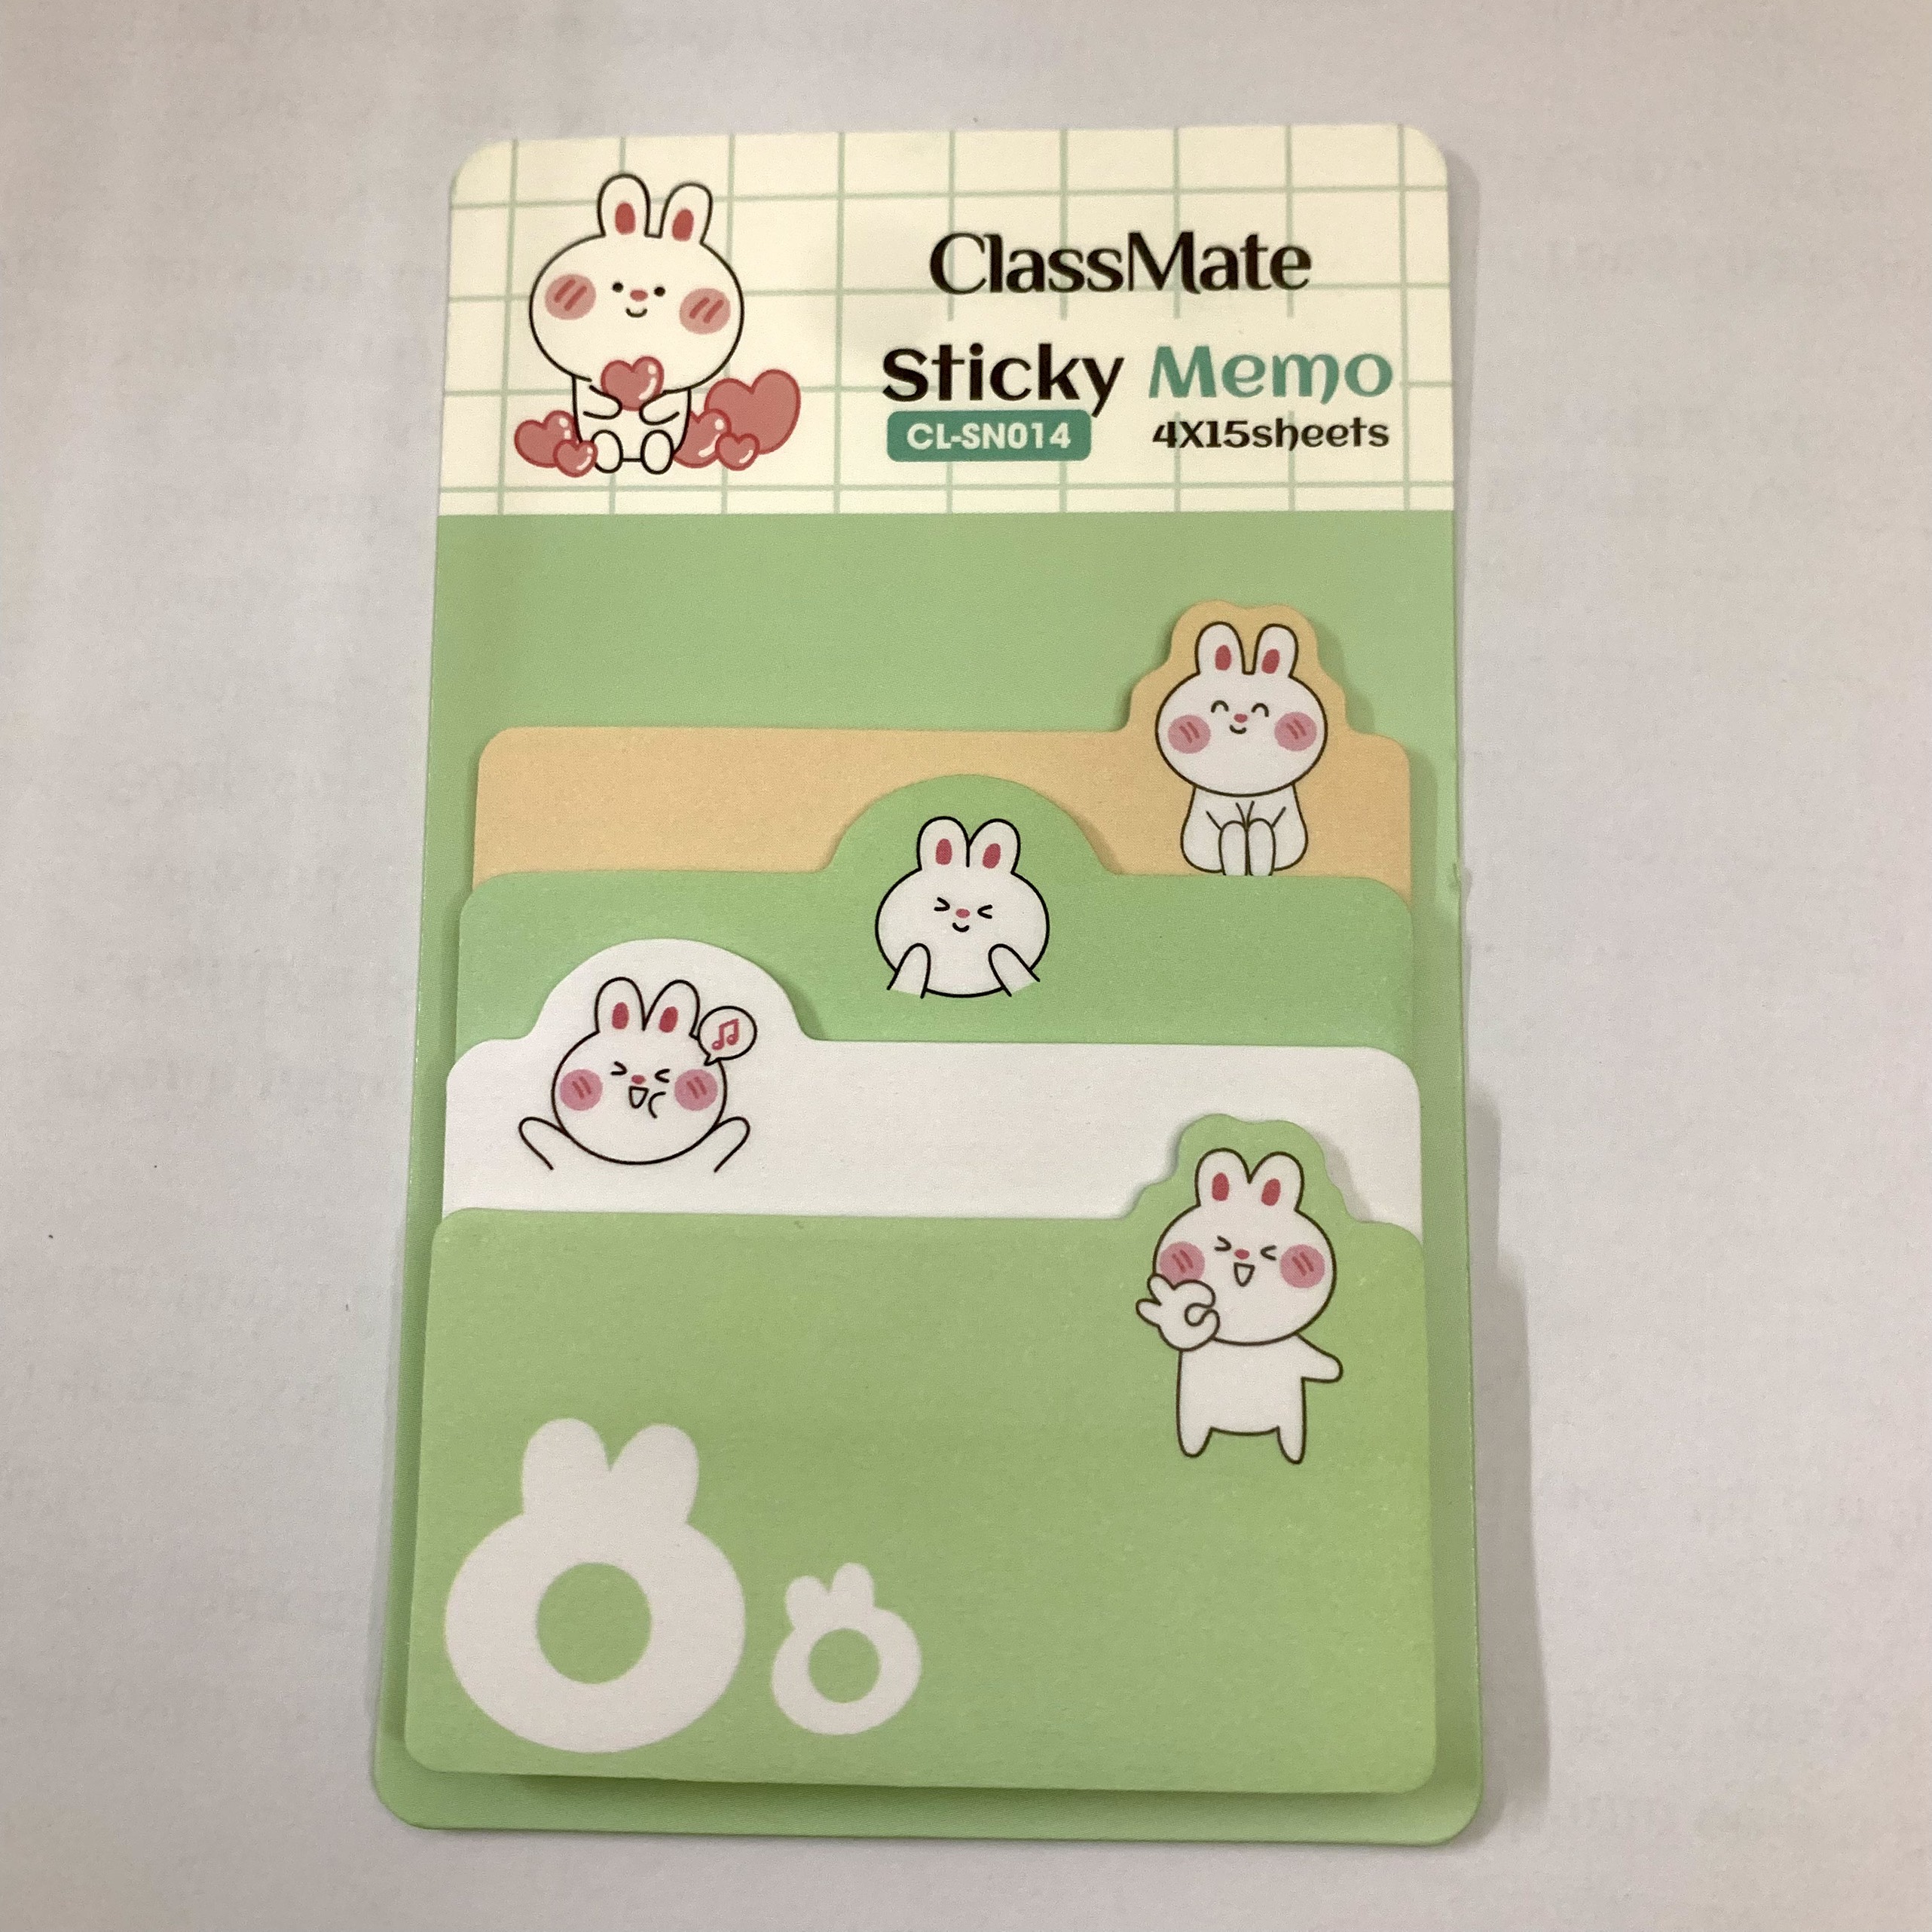 Giấy note ghi chú Classmate Sticky Memo CL-SN014 - hình thỏ dễ thương, chia 4 kích thước/tập